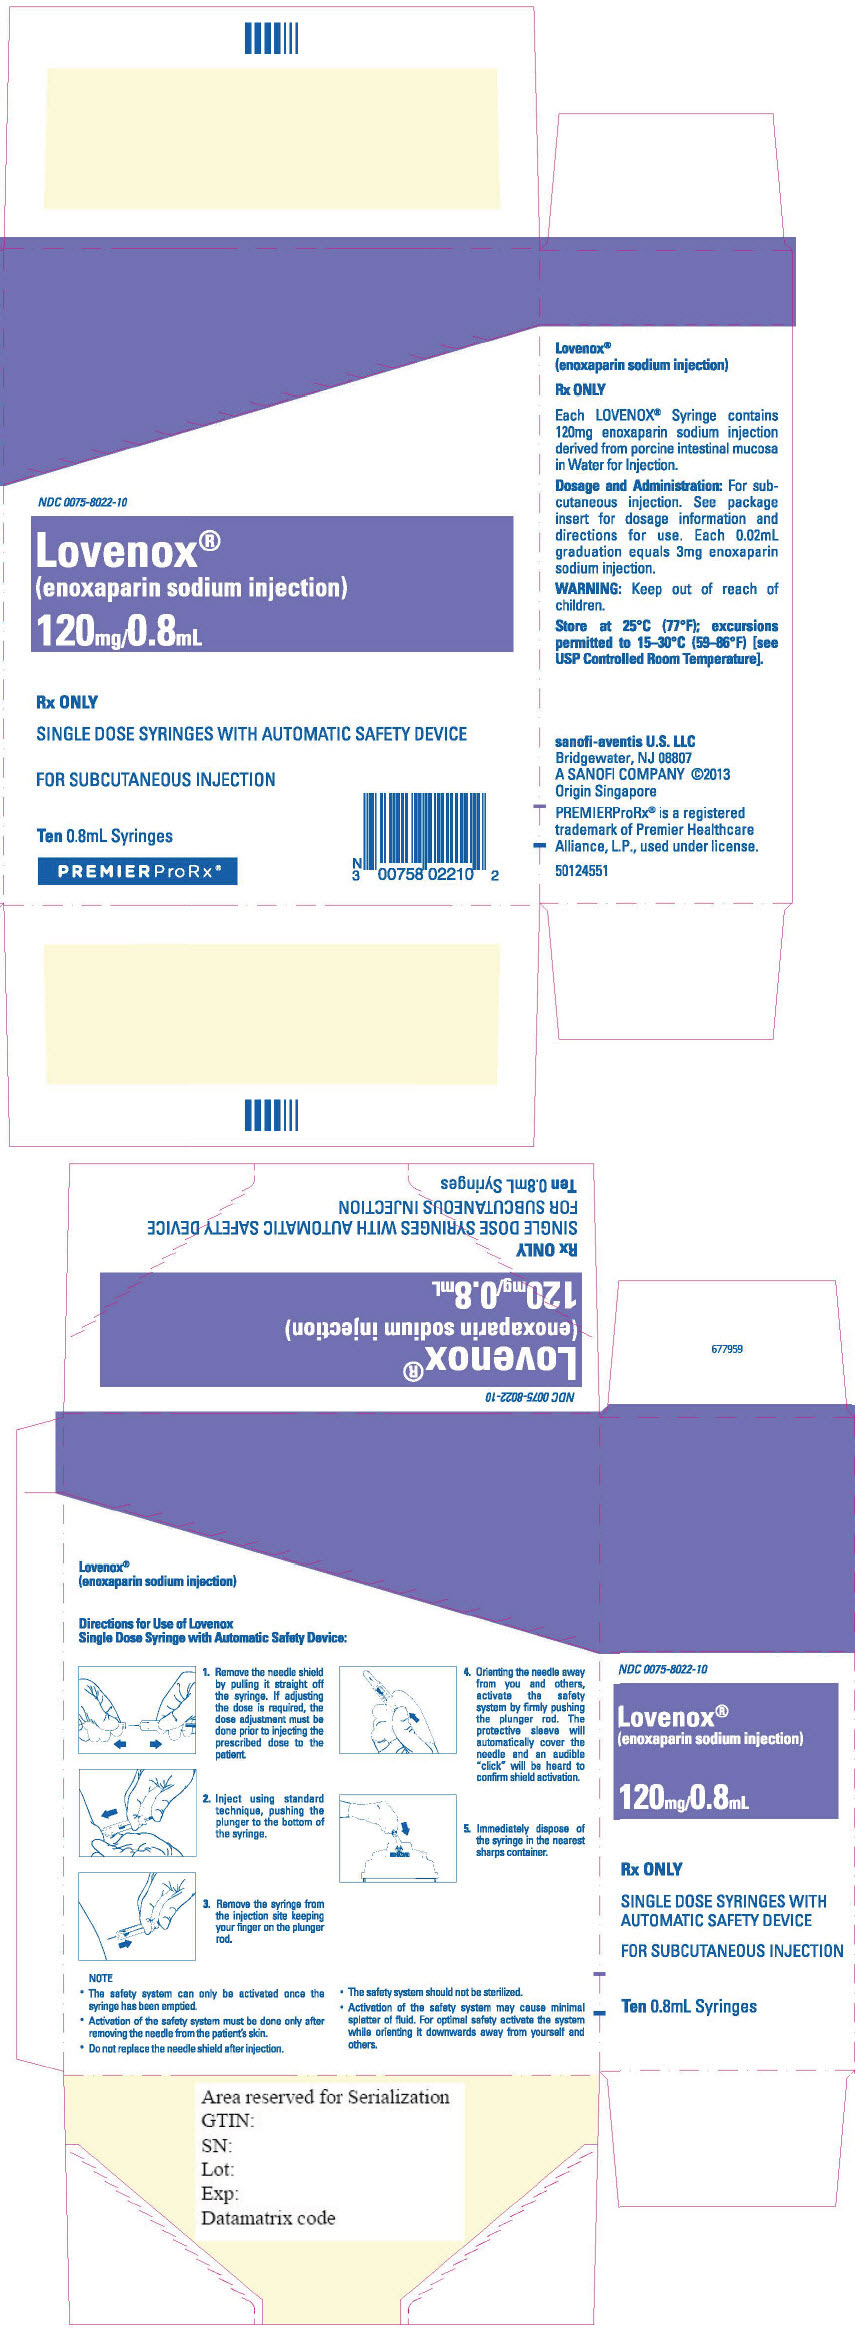 Principal Display Panel - 120 mg/0.8 mL Syringe Blister Pack Carton